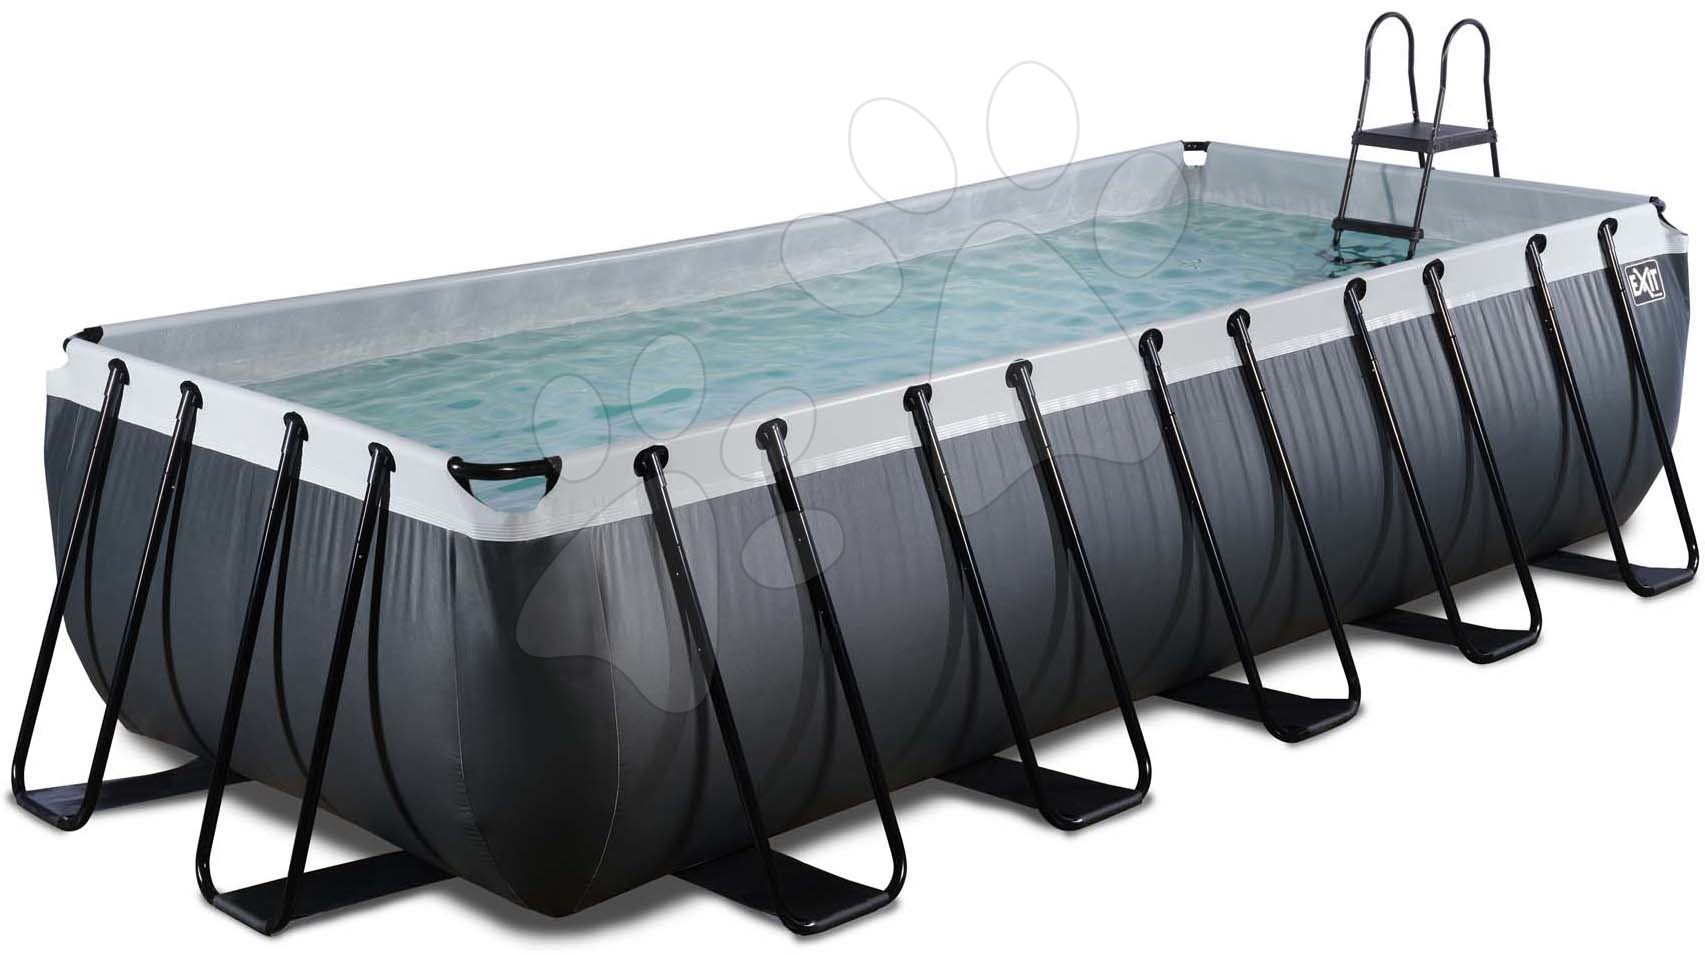 Medence homokszűrős vízforgatóval Black Leather pool Exit Toys acél medencekeret 540*250*122 cm fekete 6 évtől